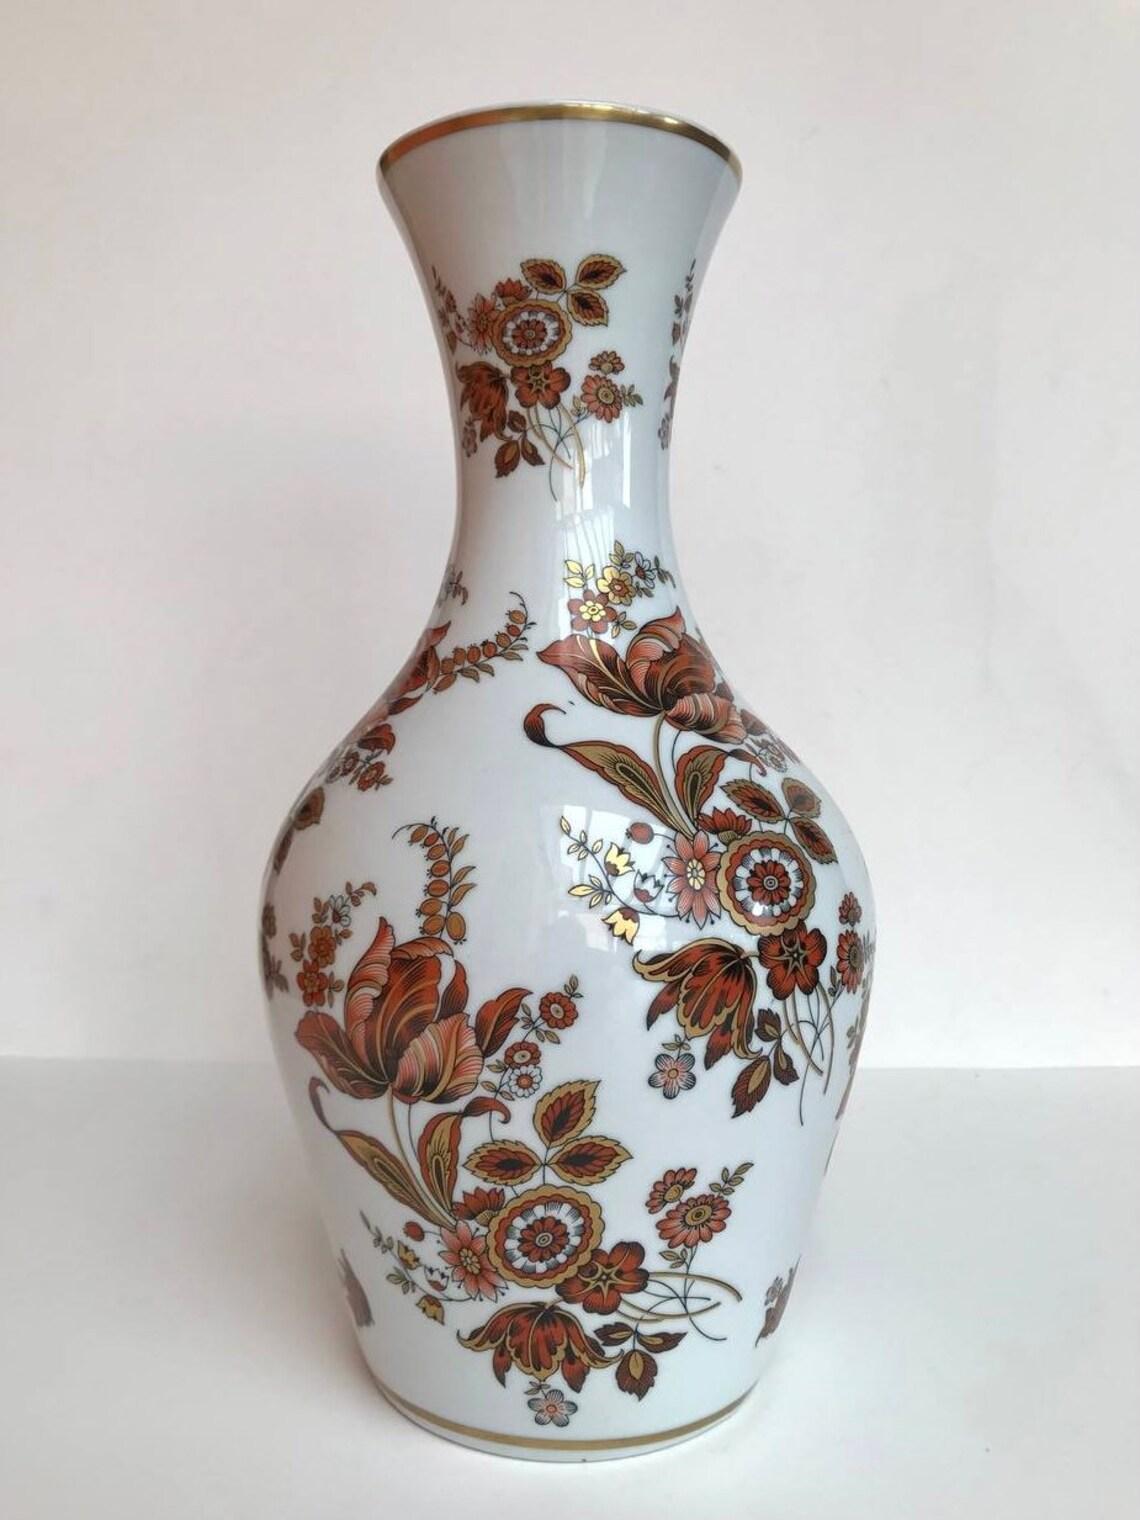 Vintage Porzellan Vase mit Blumenmuster.

Ouragan - Ulysse Paris.

Blumendekor aus 24-karätigem Gold, mit Stempel und Unterschrift auf der Vase.

Jahrgang, 1980er Jahre

In ausgezeichnetem Zustand, keine Chips, Risse oder